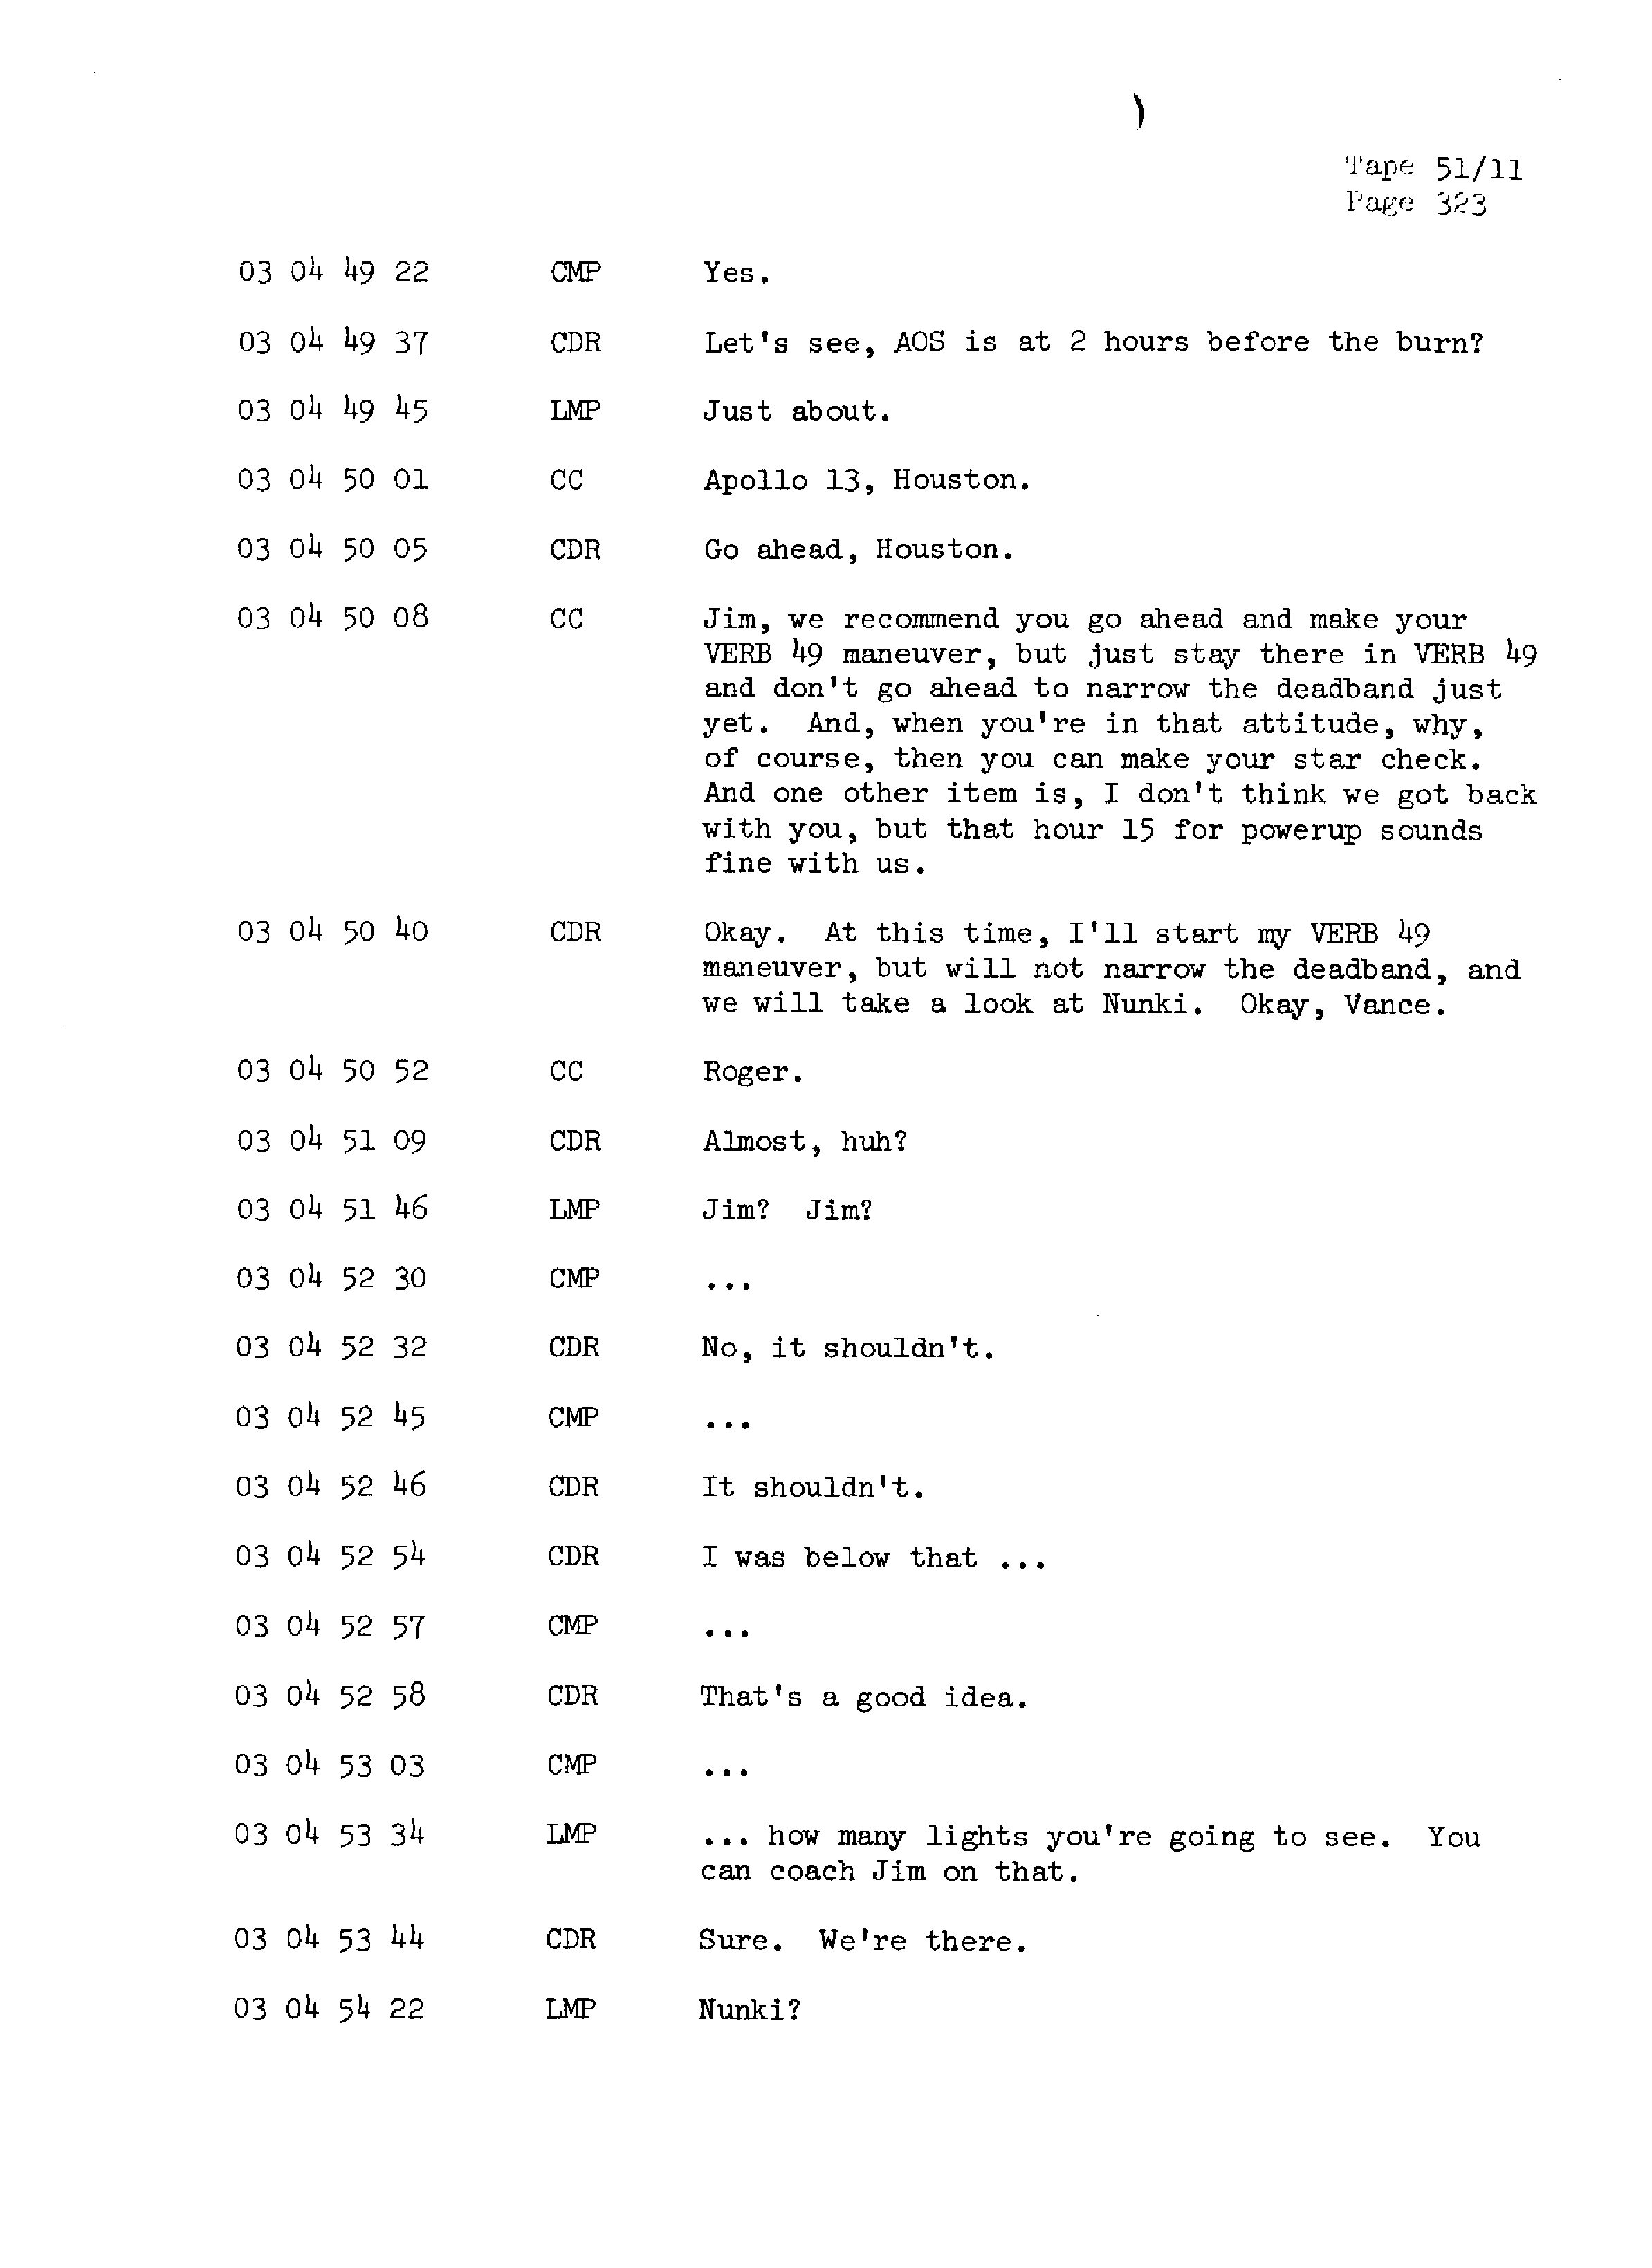 Page 330 of Apollo 13’s original transcript